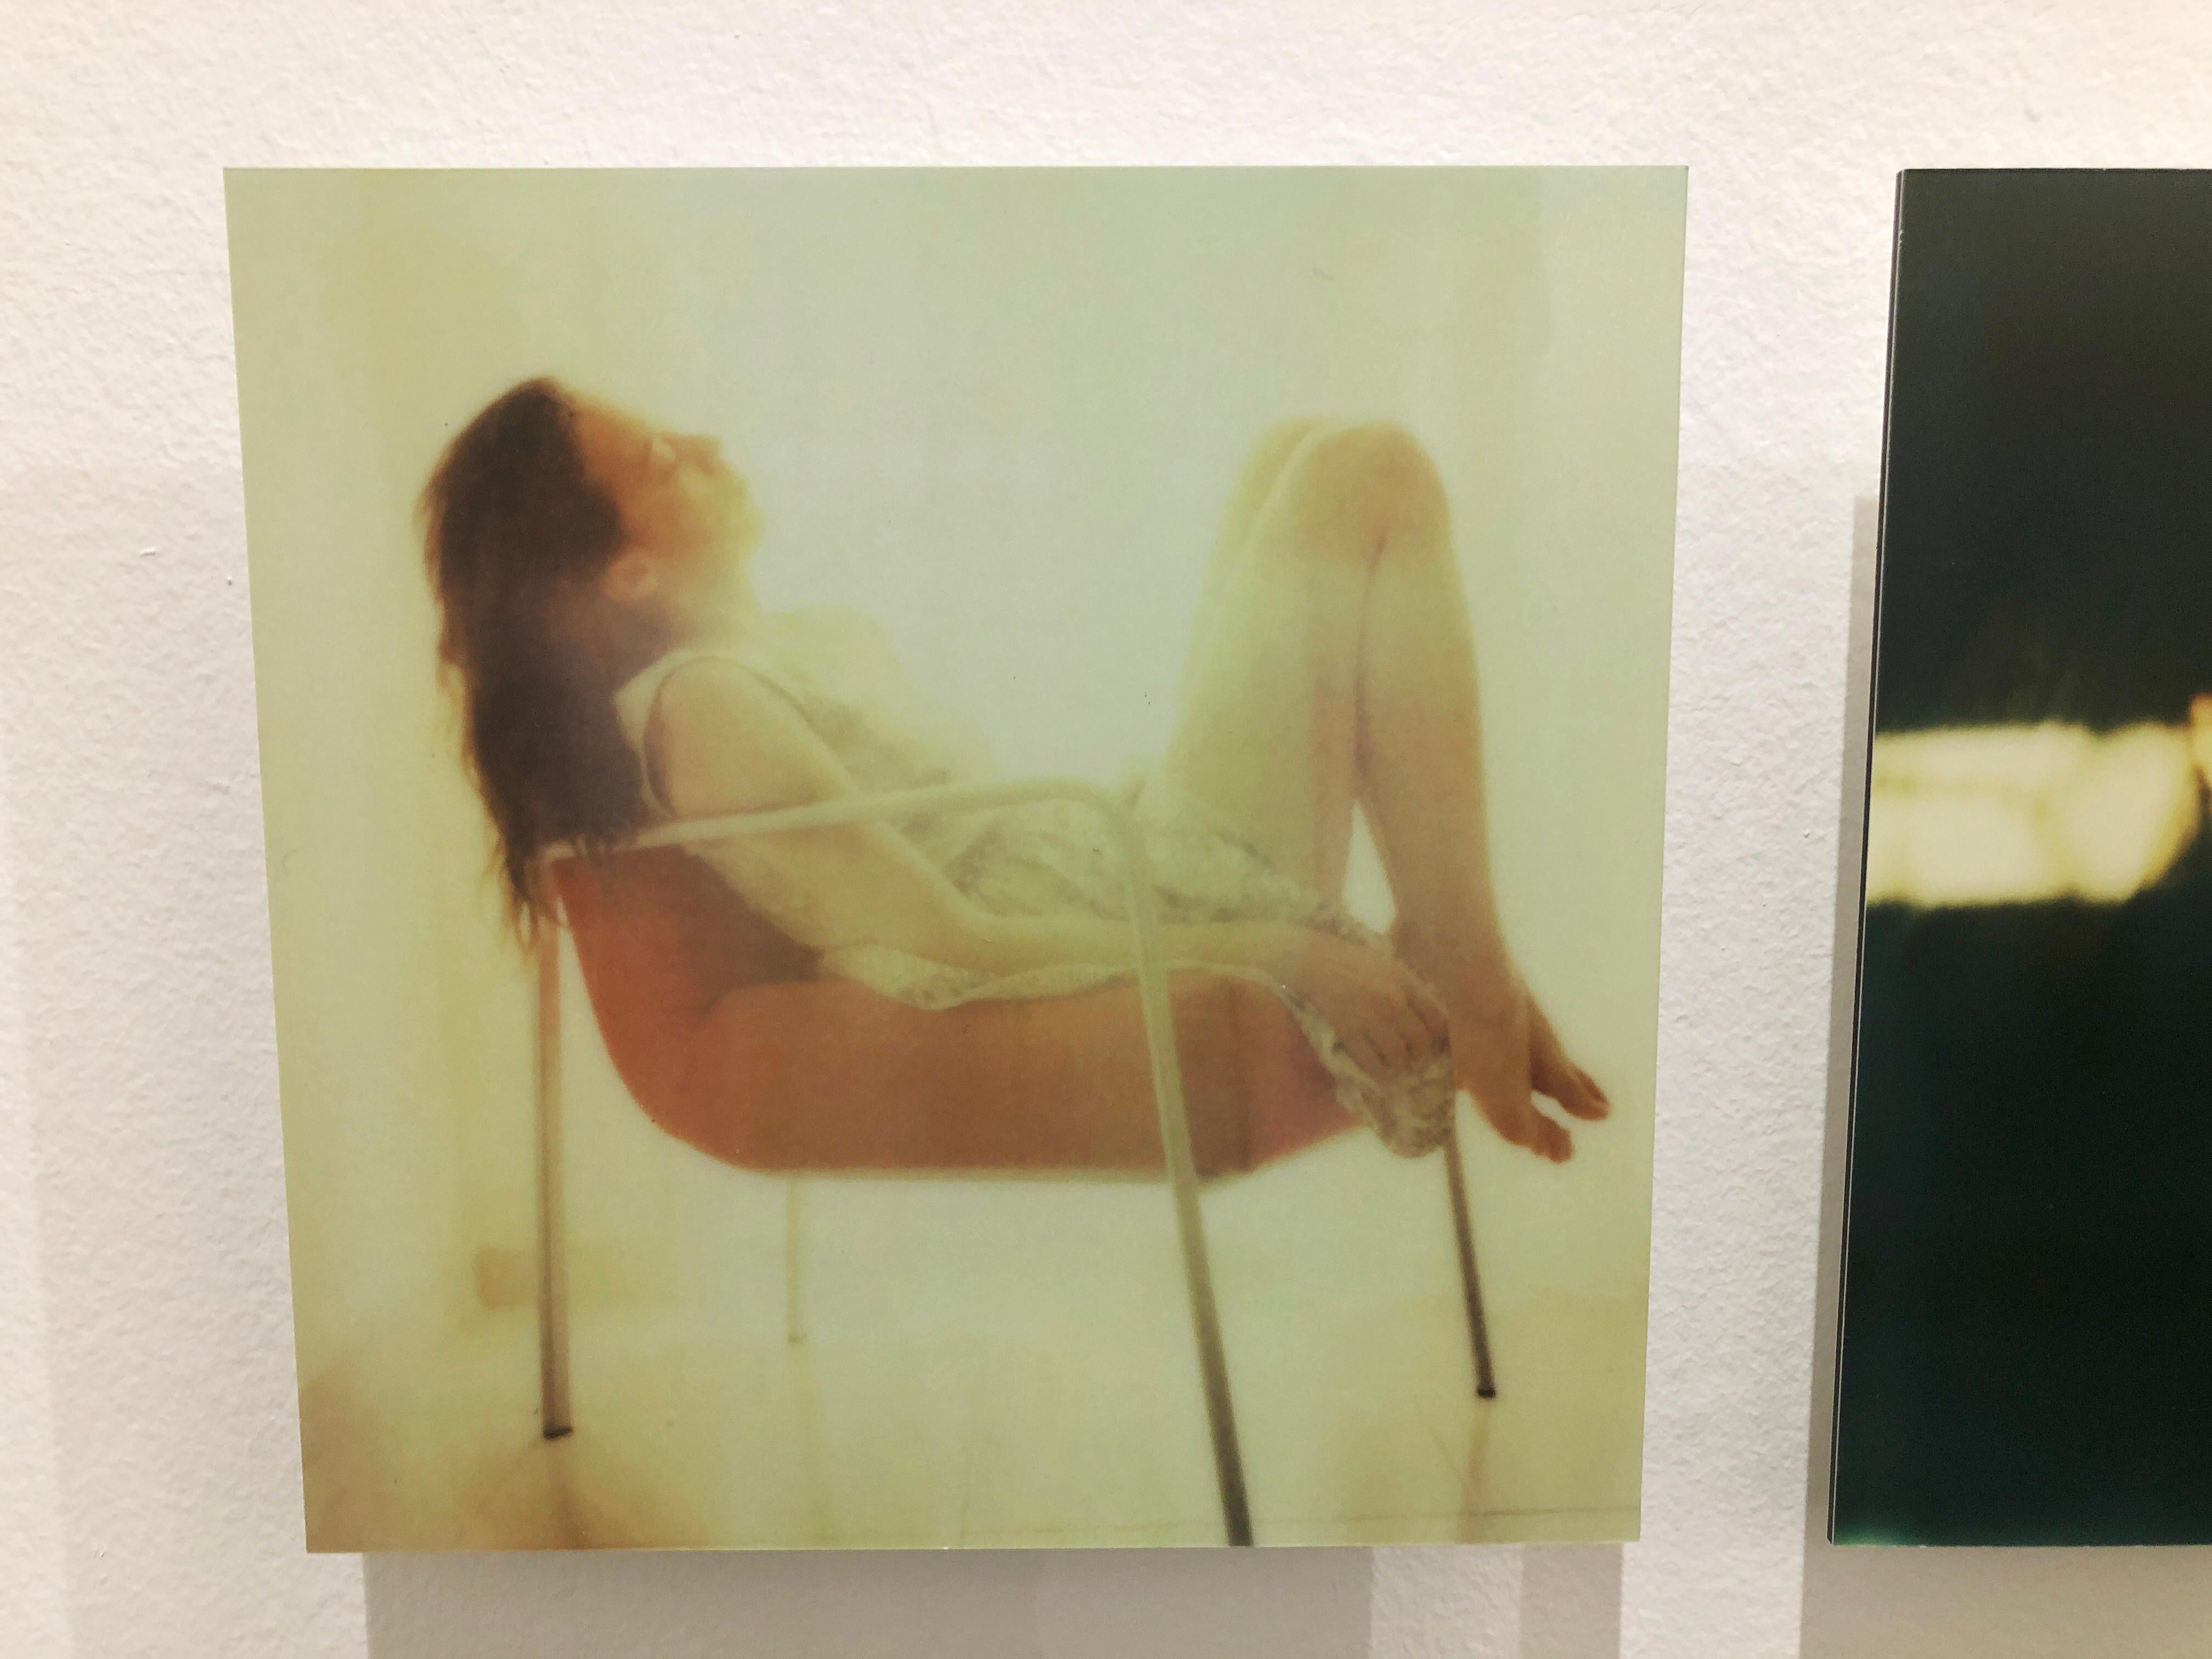 Self-Portrait II - Mounted, Contemporary, Polaroid, Color, Portrait - Photograph by Leanne Surfleet